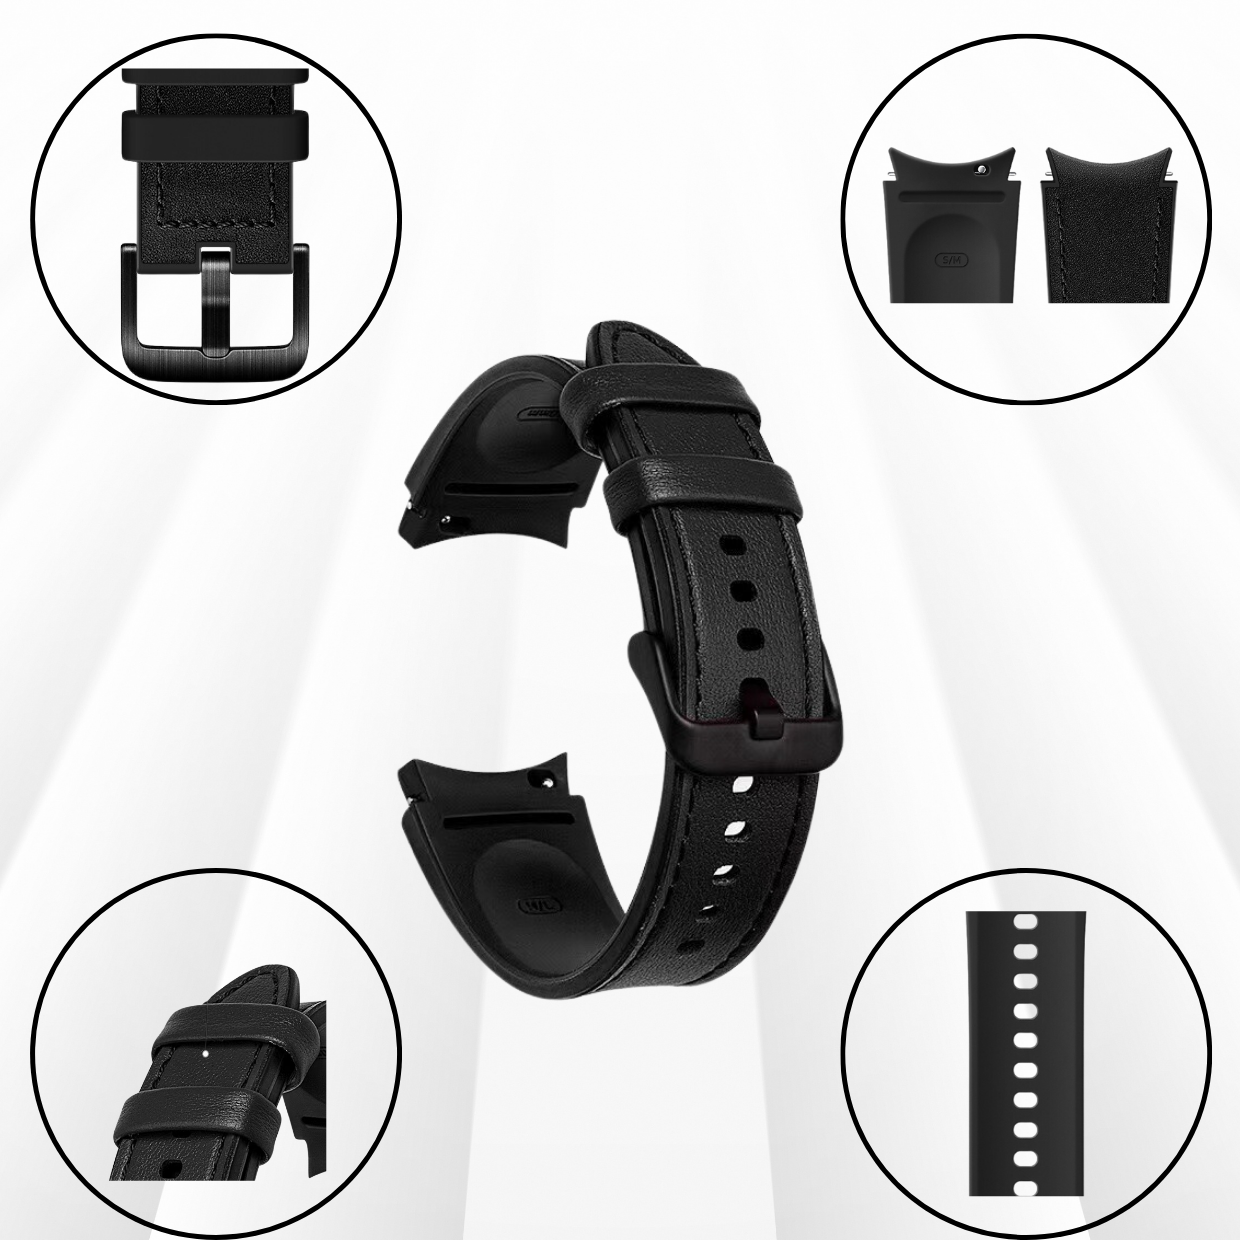 Dây Da Silicone Chống Nước Dành Cho Samsung Galaxy Watch 4/ Galaxy Watch 5/ Watch 5 Pro, Kai.N Classic Hybrid Leather - Hàng Chính Hãng